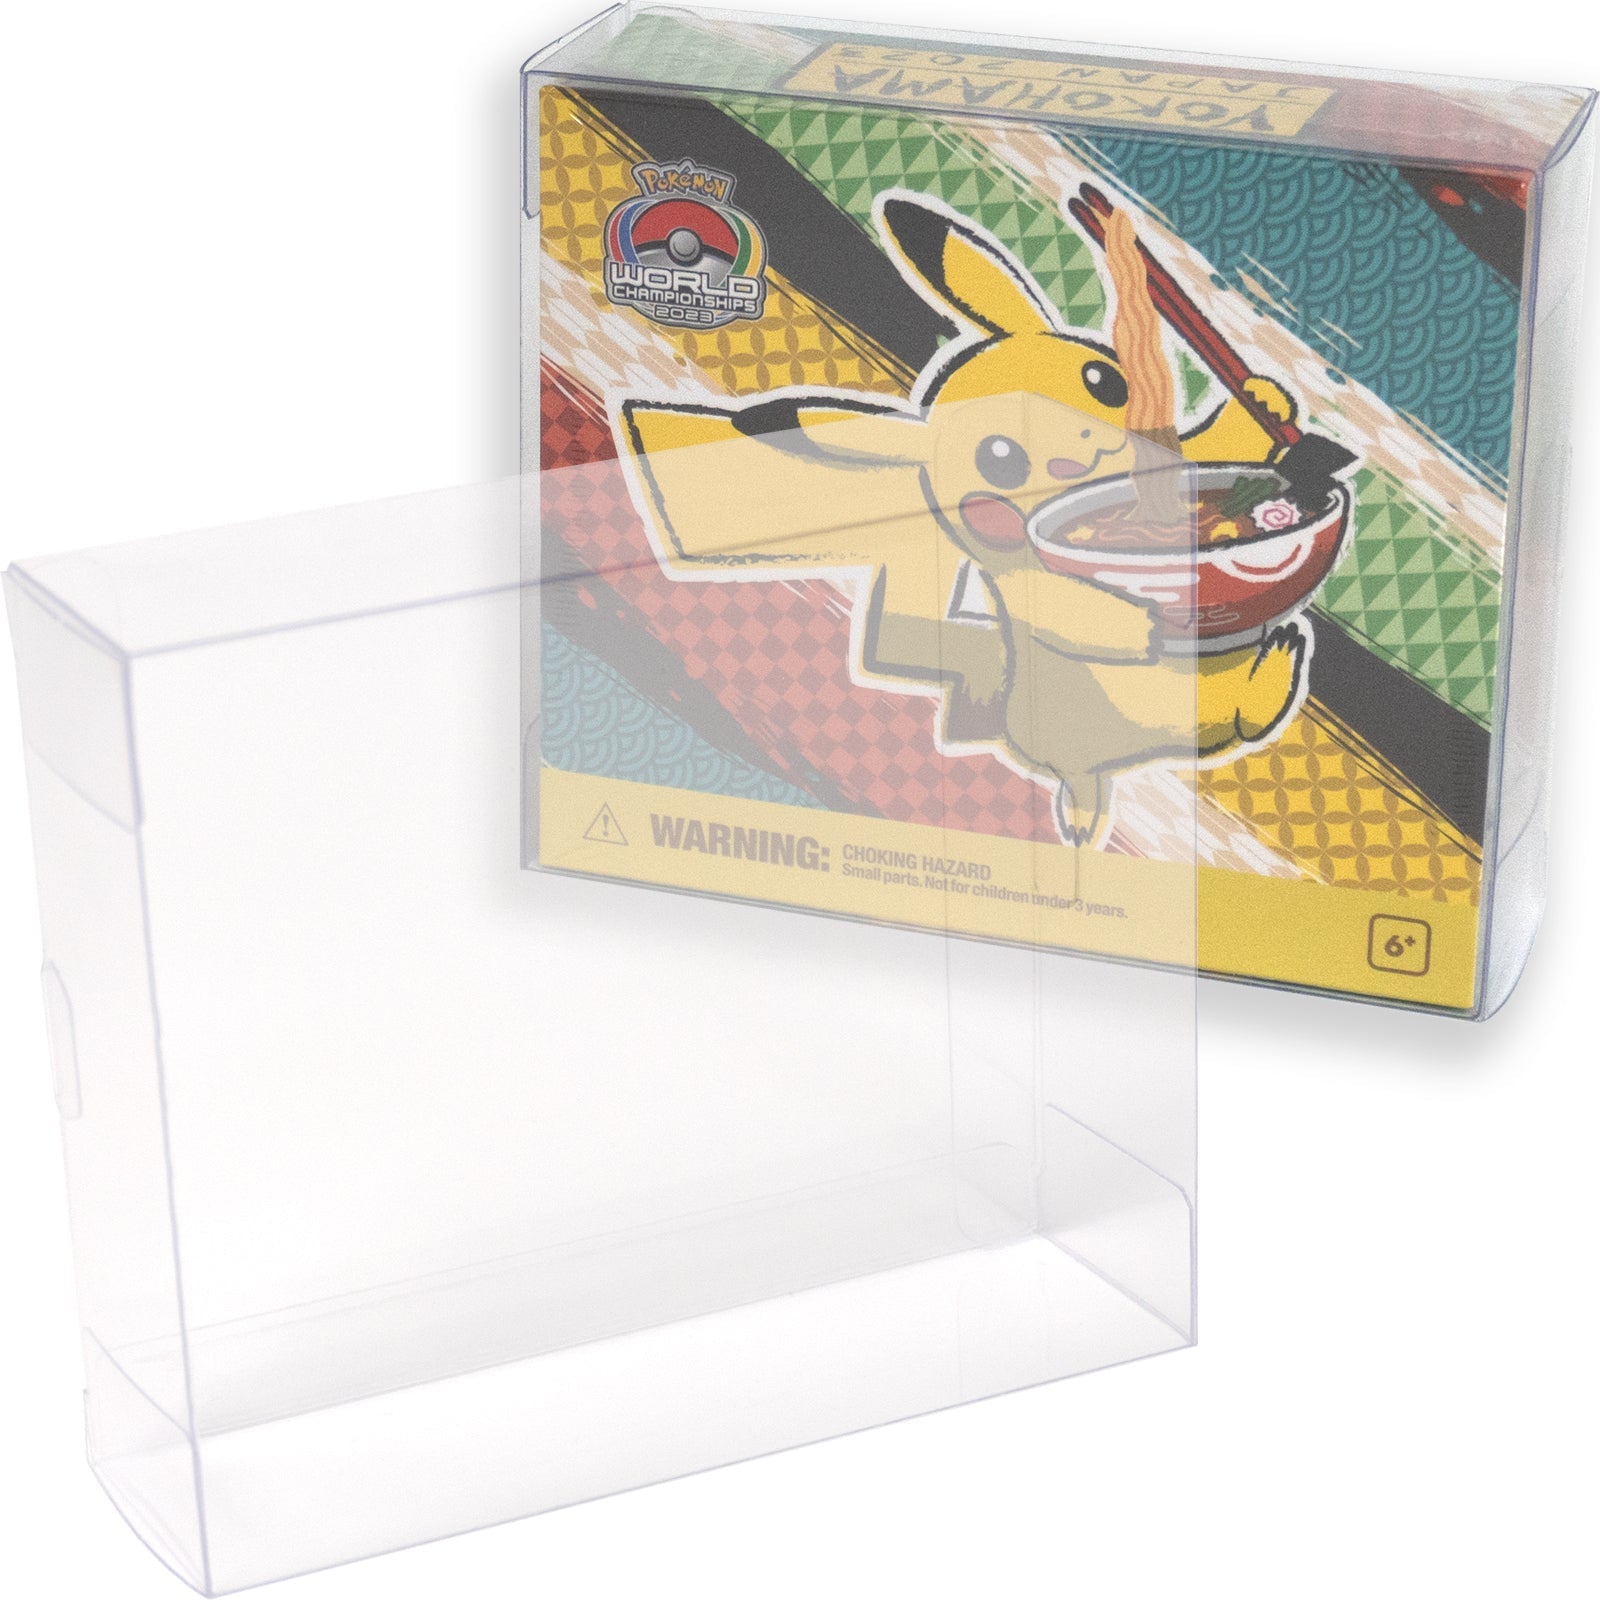 Boxx Guardian ポケモンカードBOX用 コイン＆ダメカンサイコロ＆マーカーセット WCS2023 サイズ